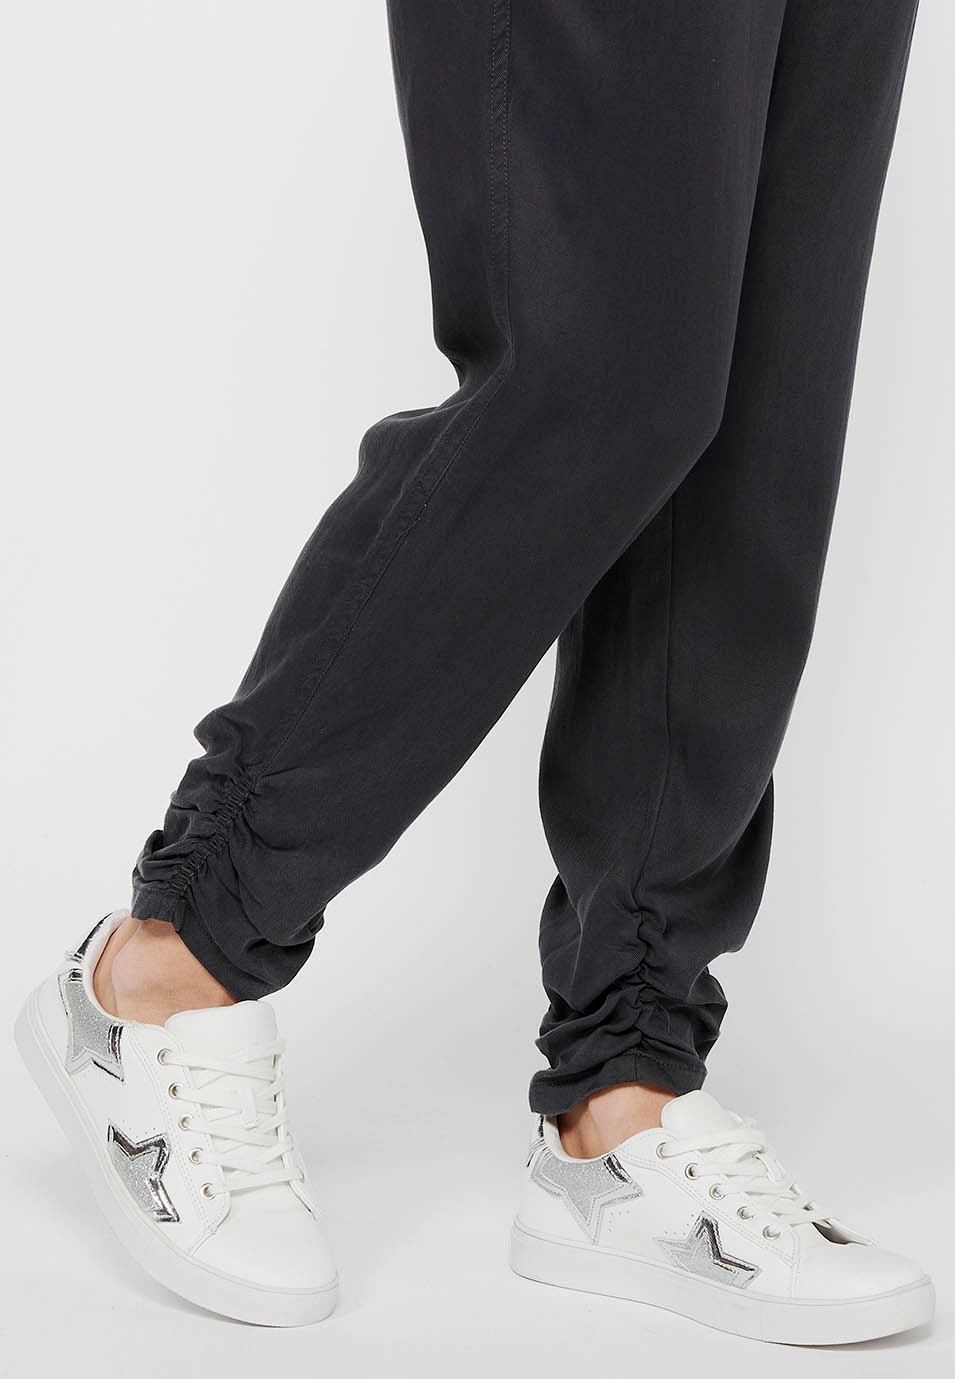 Pantalon de jogging long finition bouclée et taille caoutchoutée avec quatre poches dont deux à l'arrière avec rabat en Noir pour Femme 9